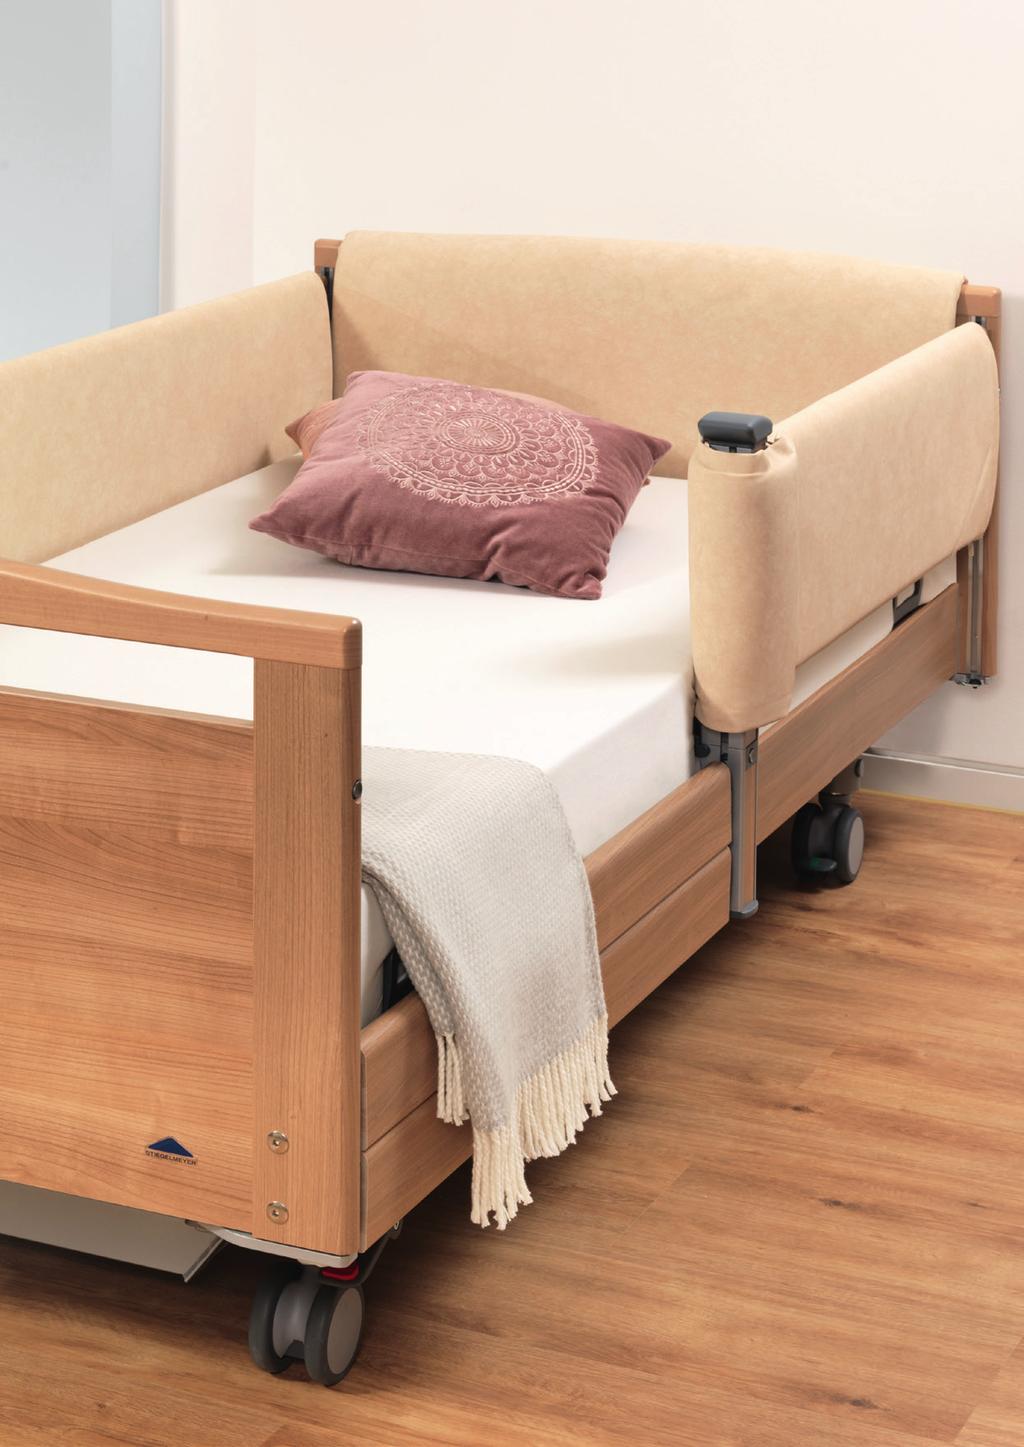 Zusätzlich wird das Bett vor Beschädigungen geschützt.